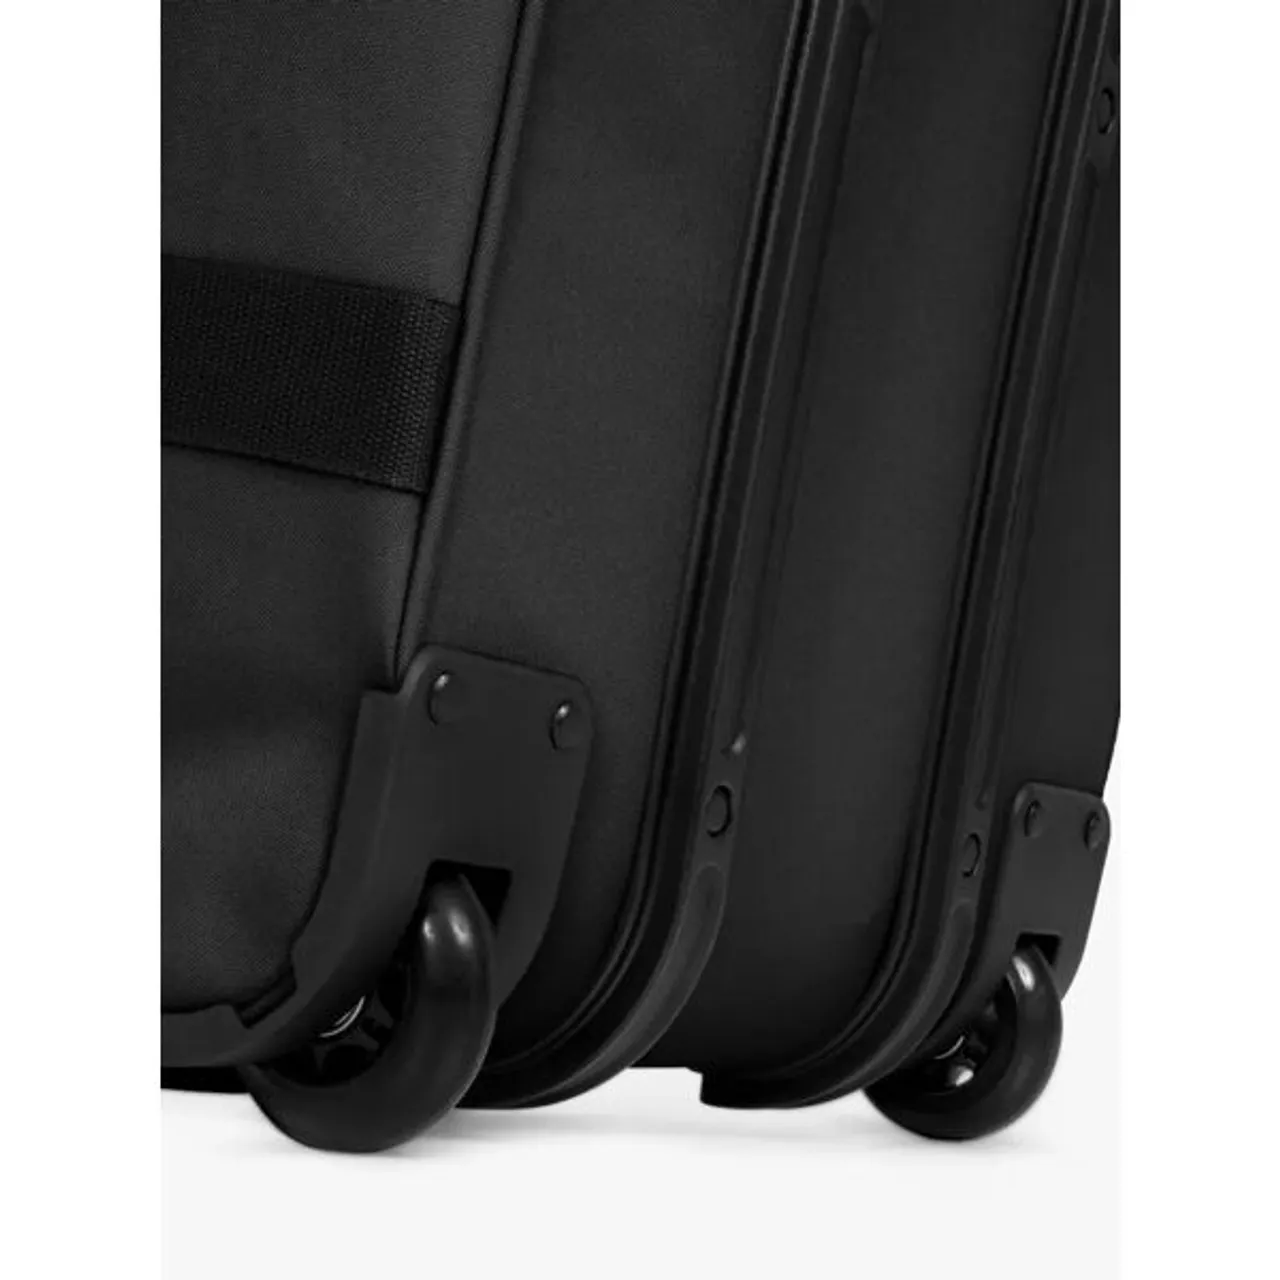 Eastpak Transit'R 2-Wheel 67cm Medium Suitcase - Black - Unisex